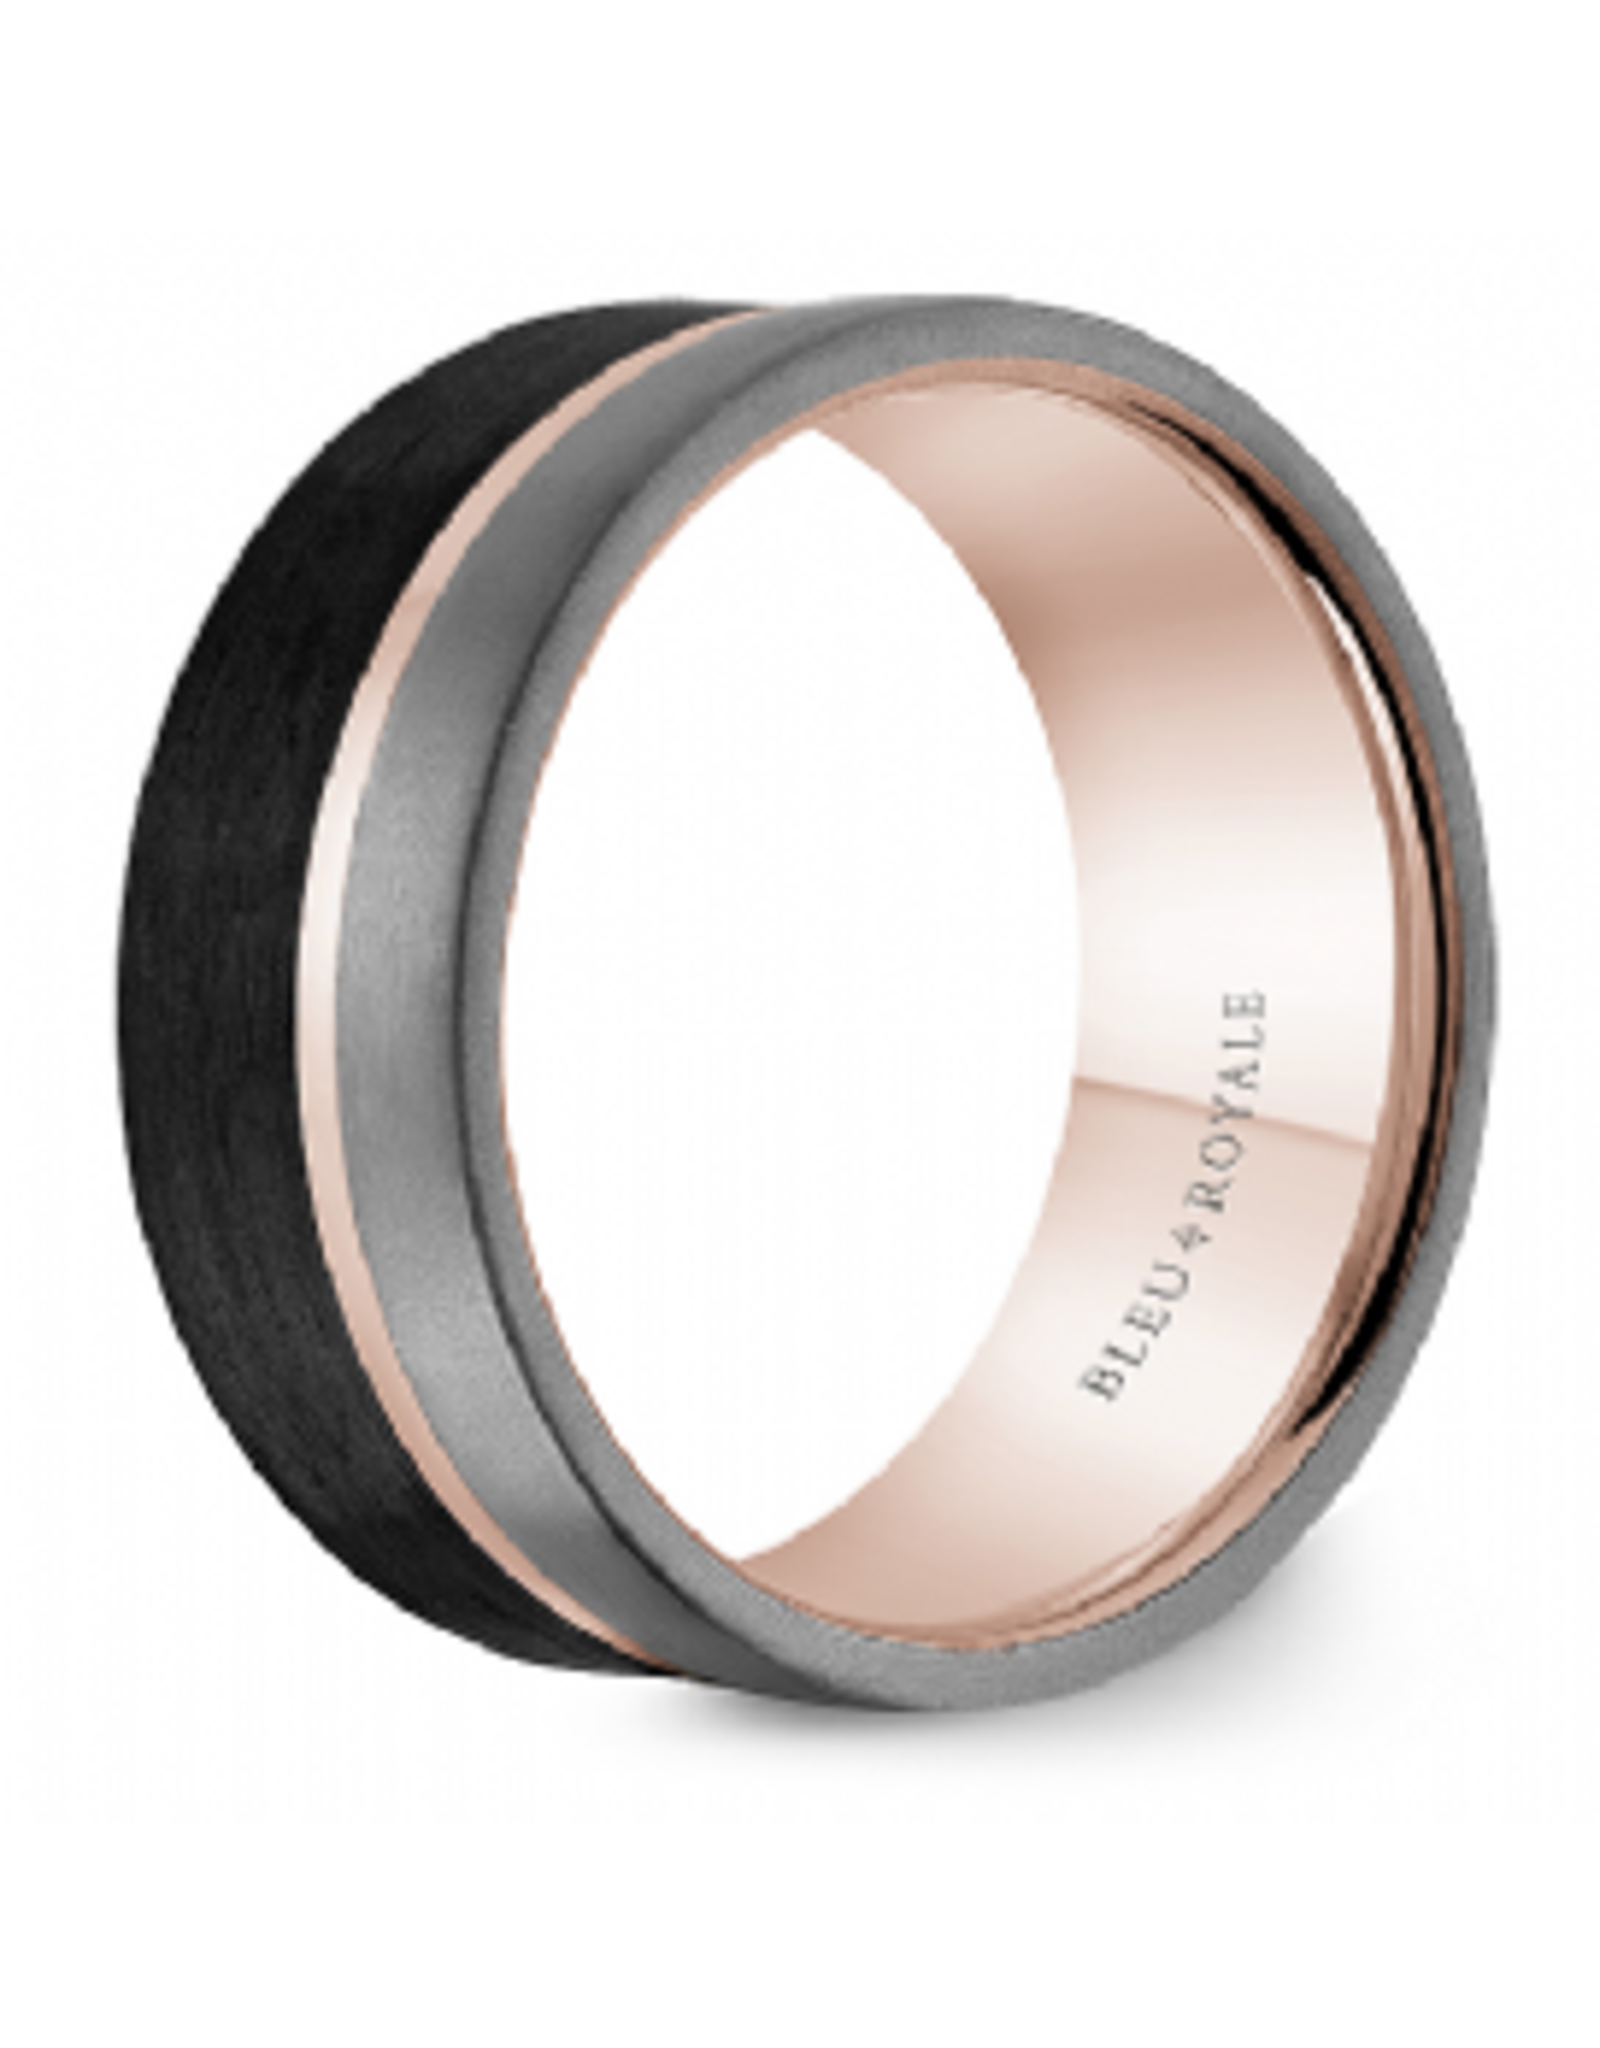 14K Rose Gold & Tantalum Carbon Fiber Band - 9mm, Size 10